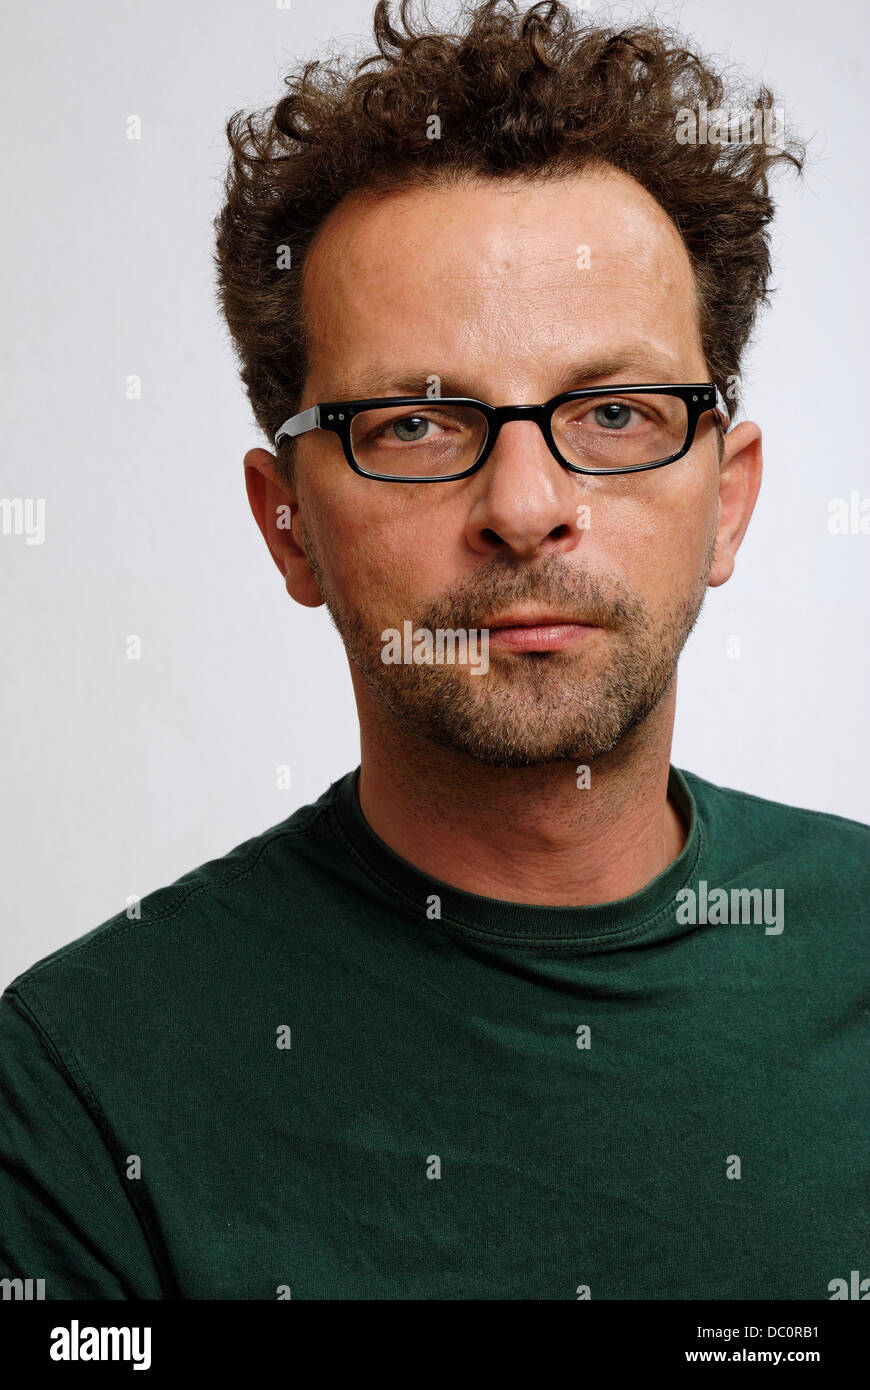 Un homme avec des lunettes, un t.shirt vert non rasé et Banque D'Images